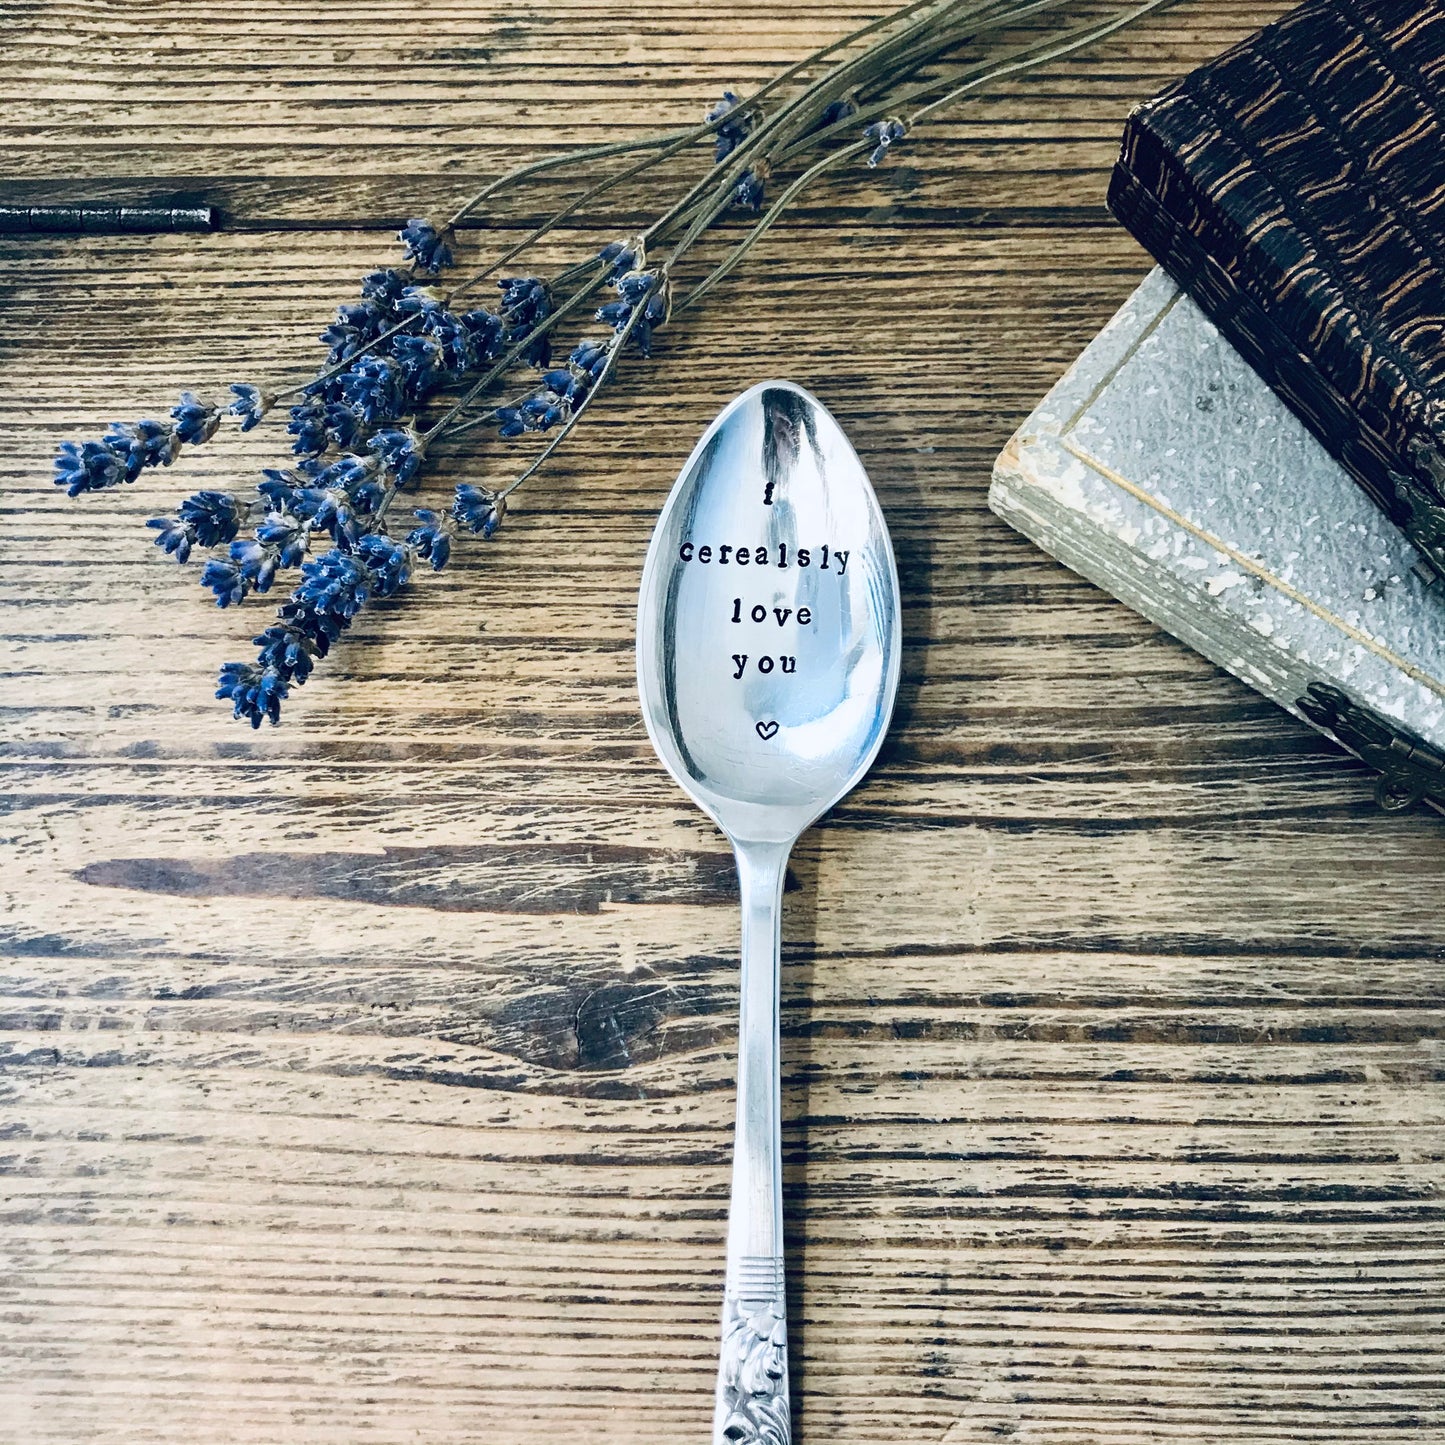 I Cerealsly Love You  - Vintage Dessert Spoon